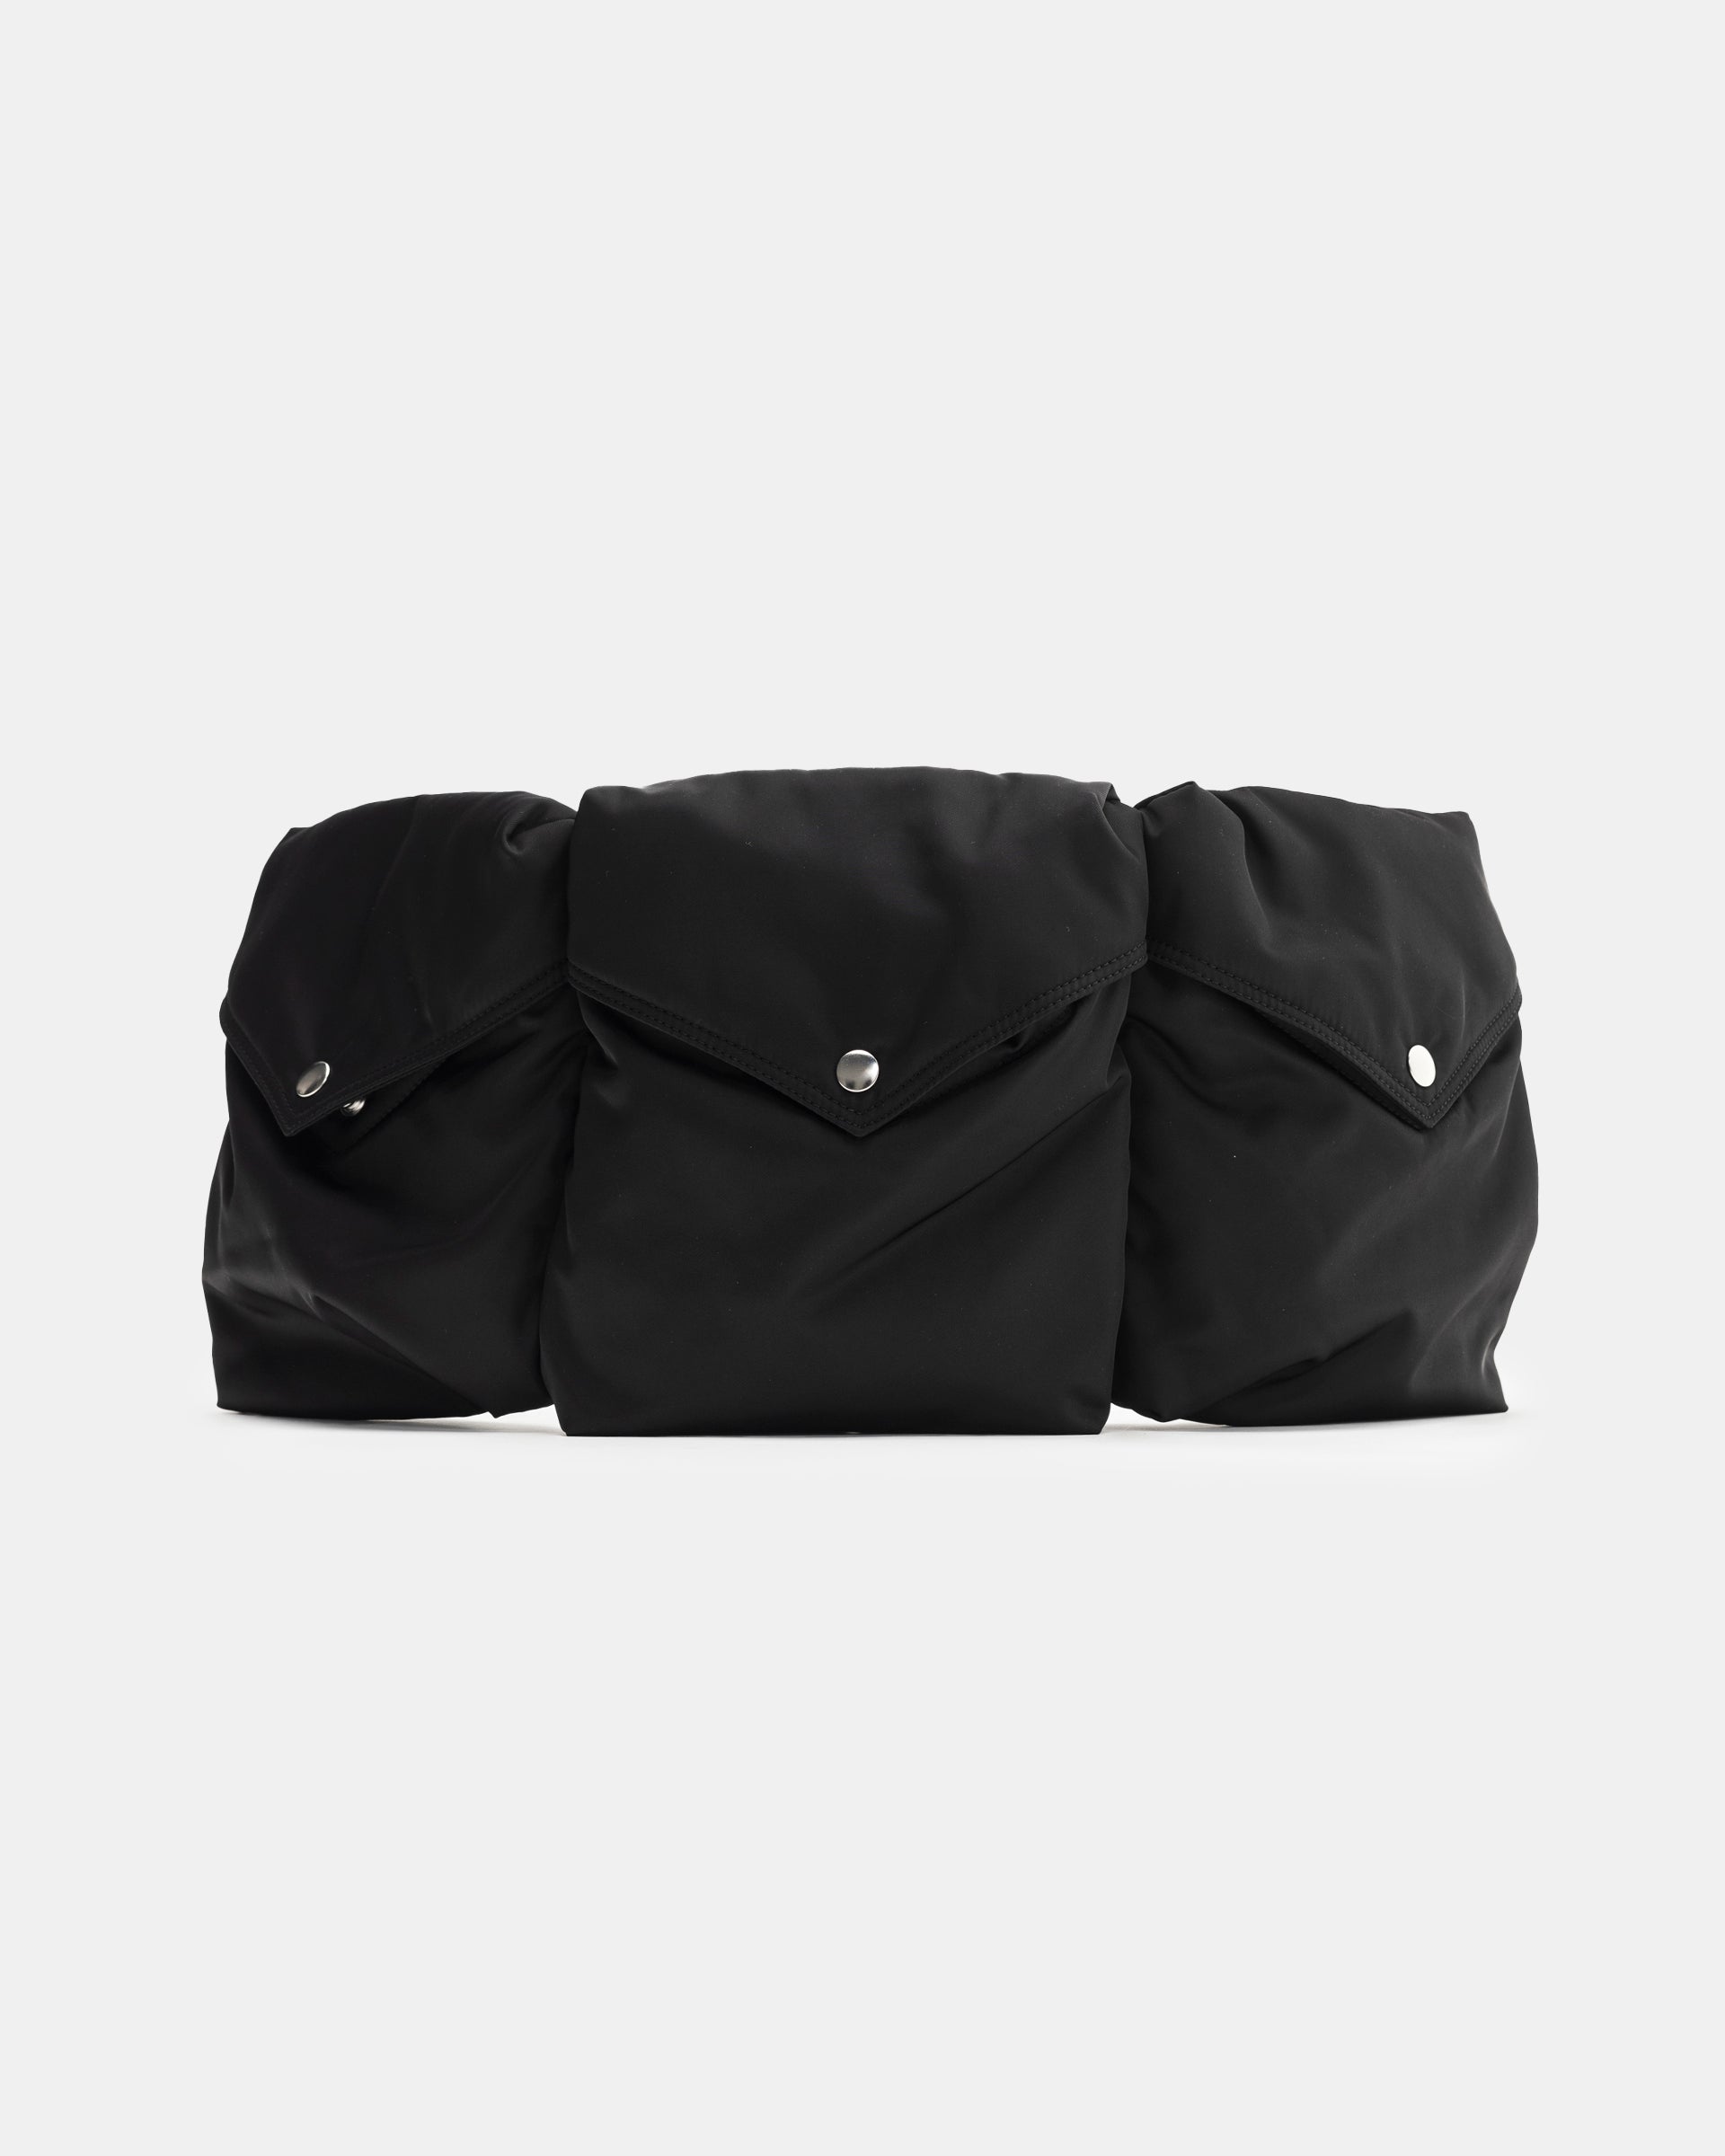 Padded Multi-Pocket Bag in Black